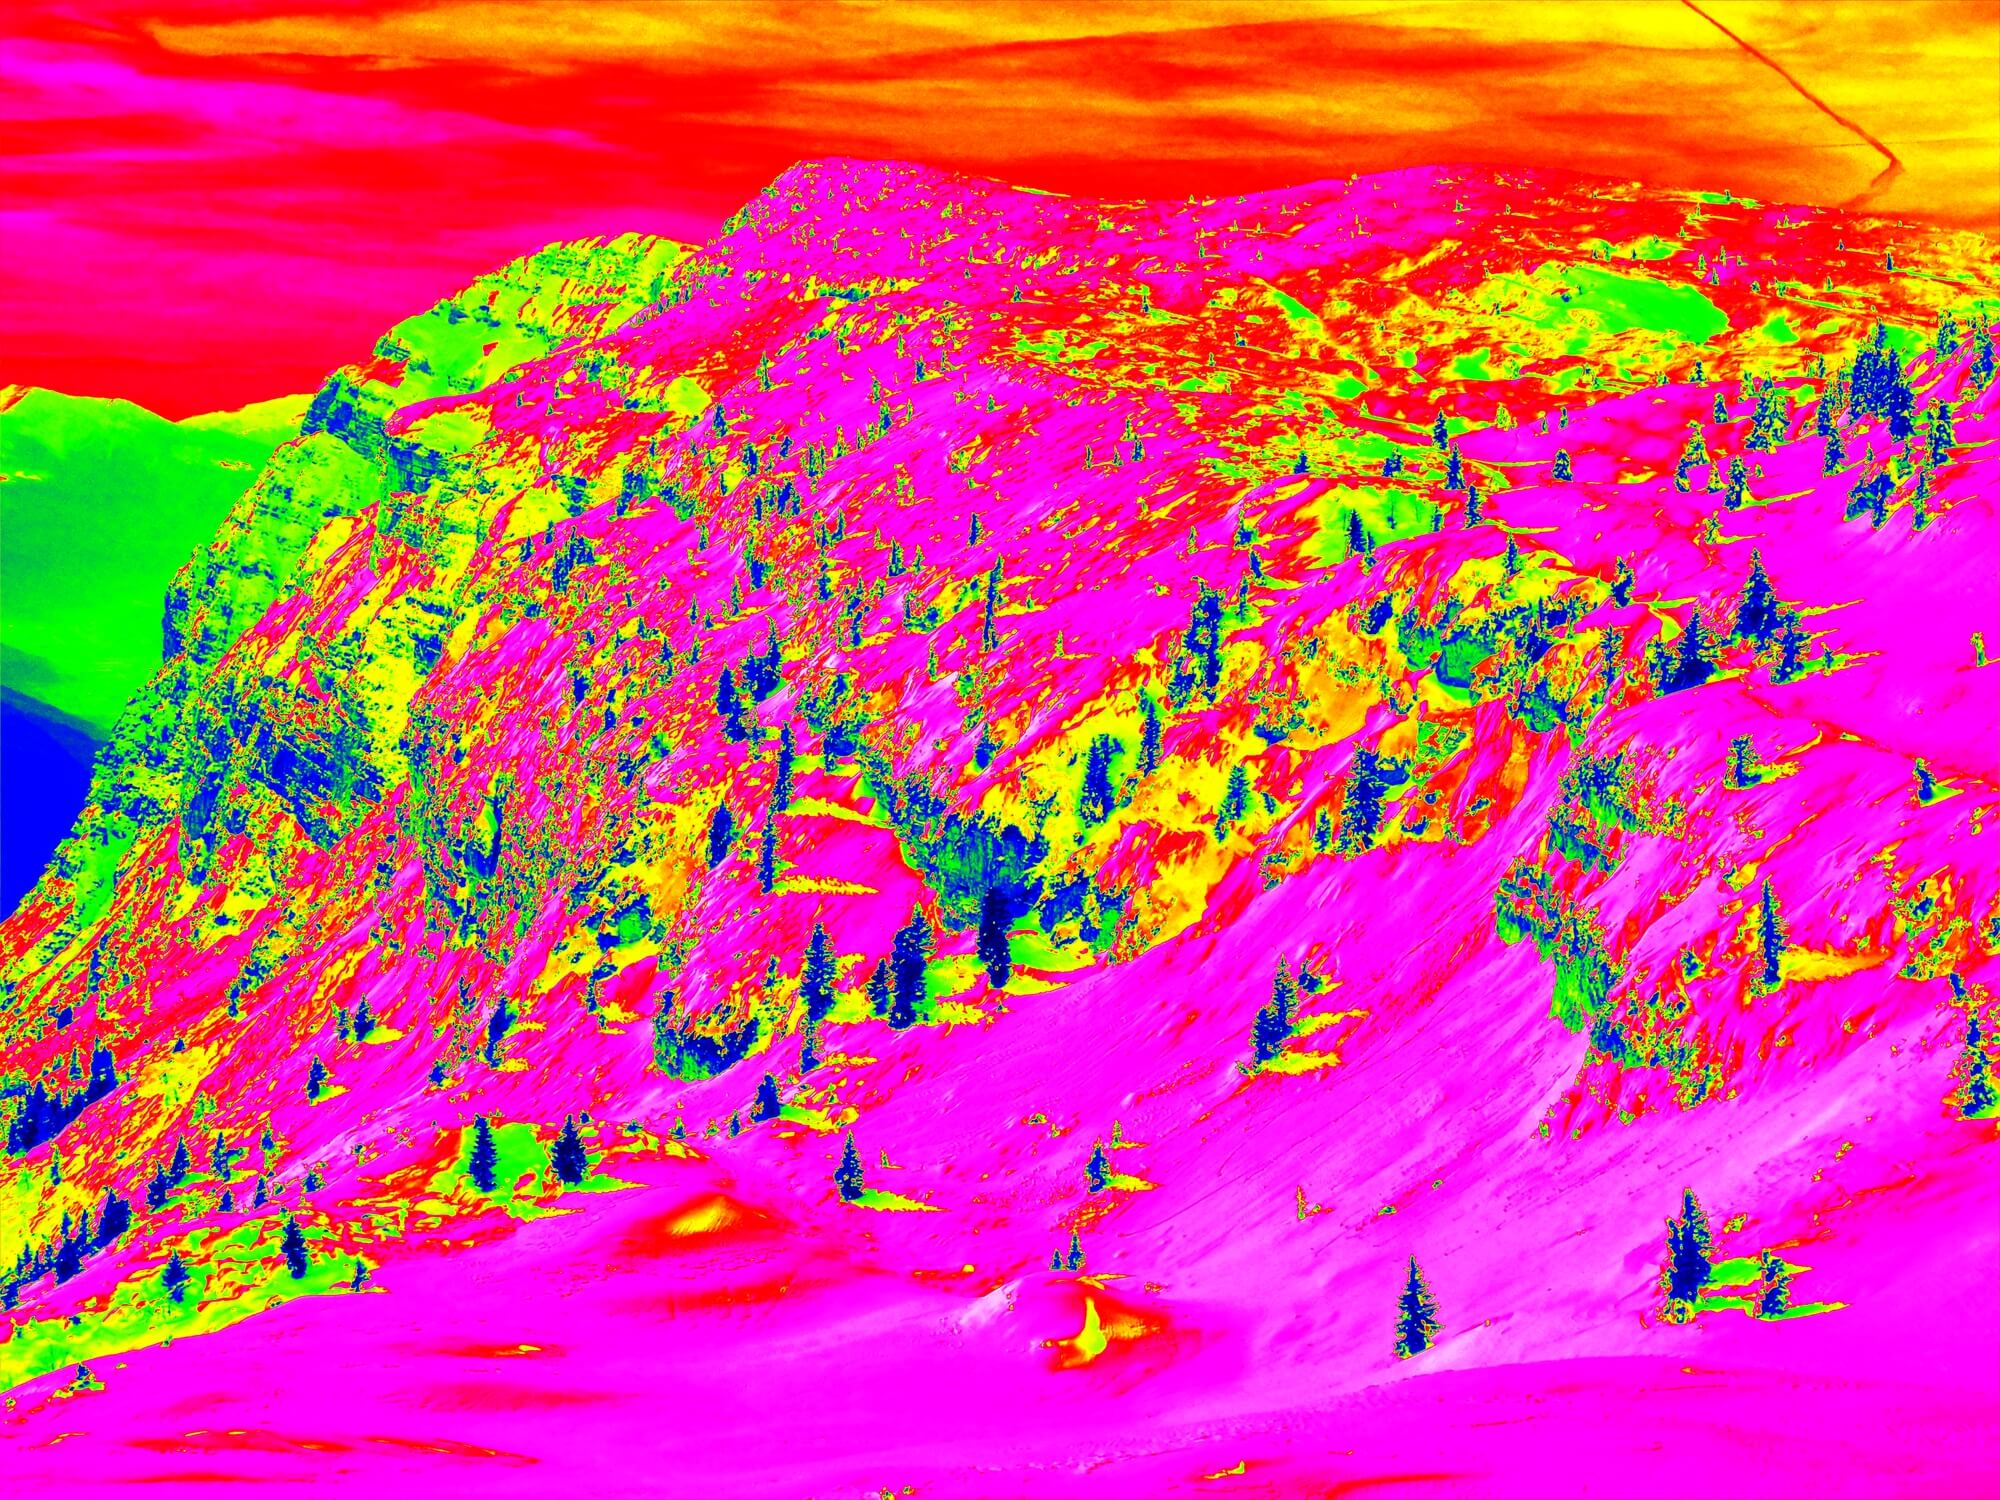 צילום תת אדום של אתר סקי באירופה.  <a href="https://depositphotos.com. ">איור: depositphotos.com</a> 